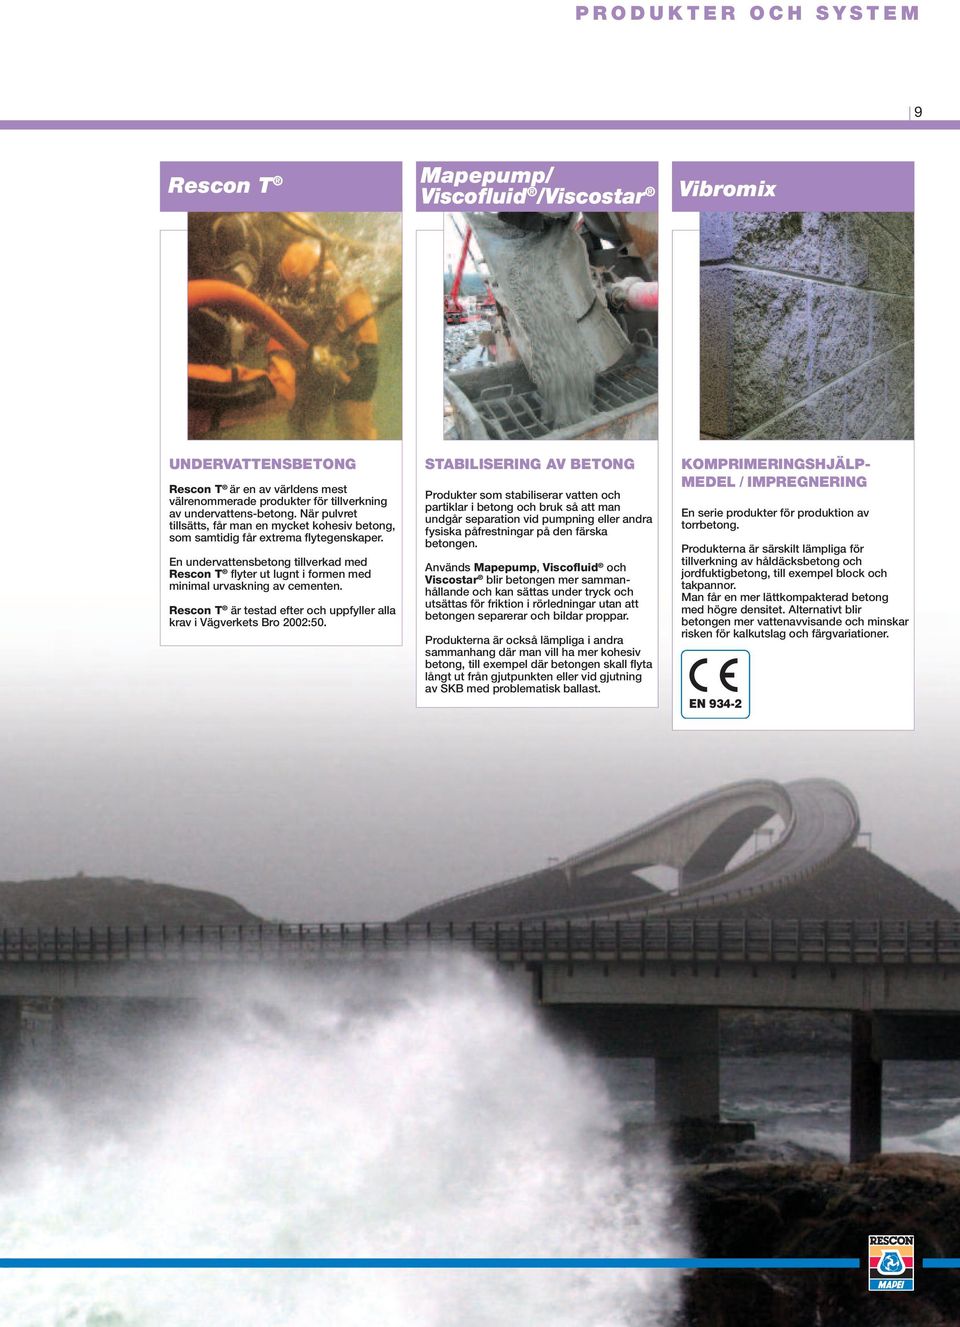 En undervattensbetong tillverkad med Rescon T flyter ut lugnt i formen med minimal urvaskning av cementen. Rescon T är testad efter och uppfyller alla krav i Vägverkets Bro 2002:50.